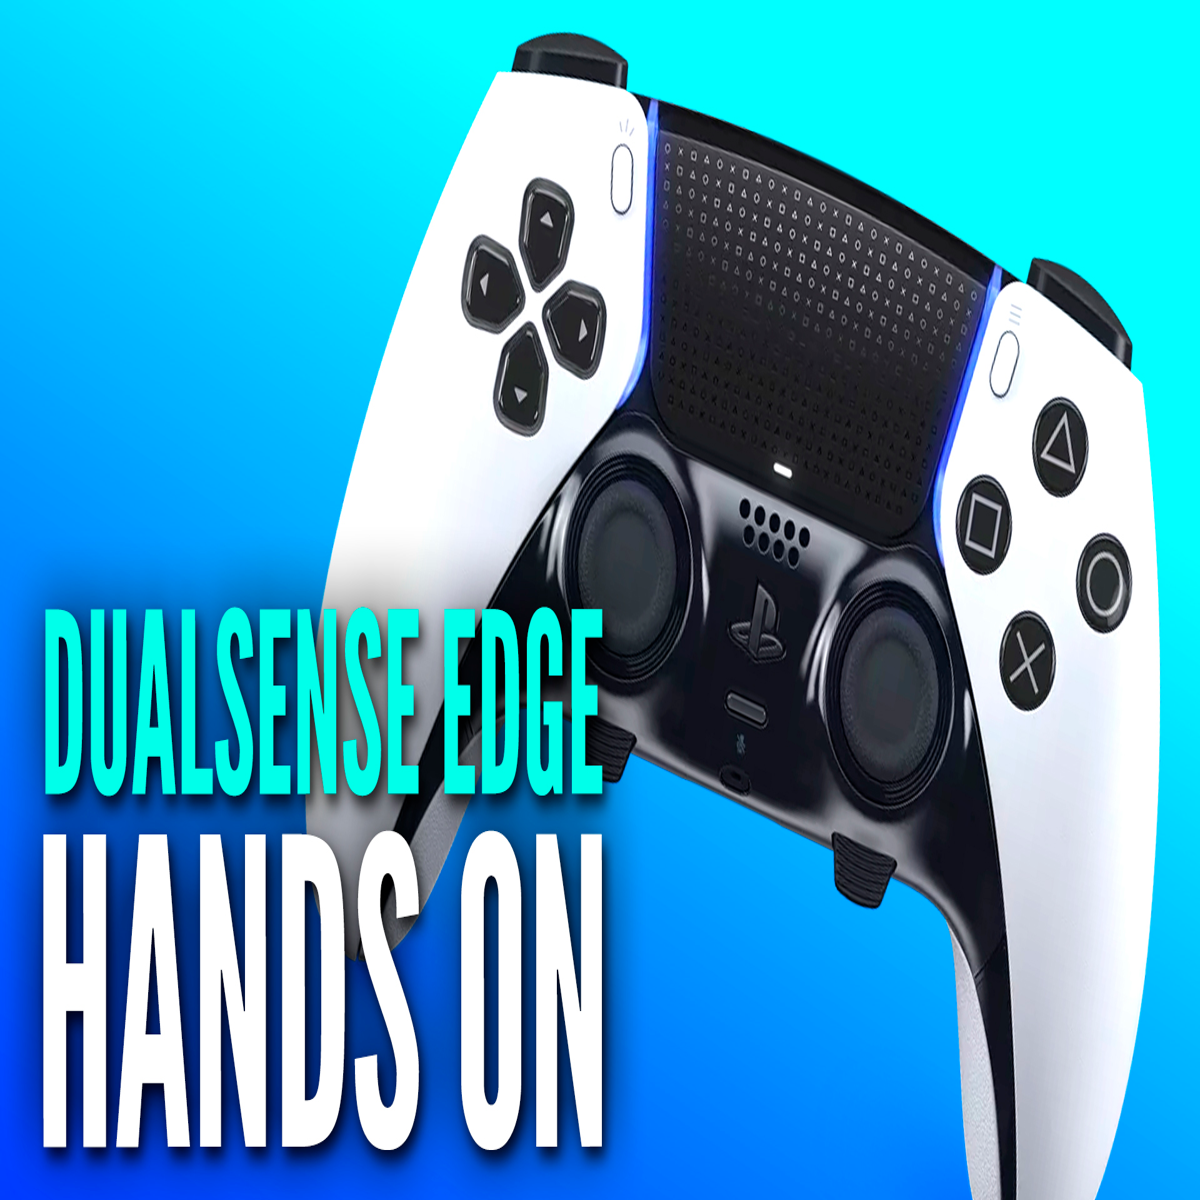 DualSense Edge, o novo comando da Playstation 5